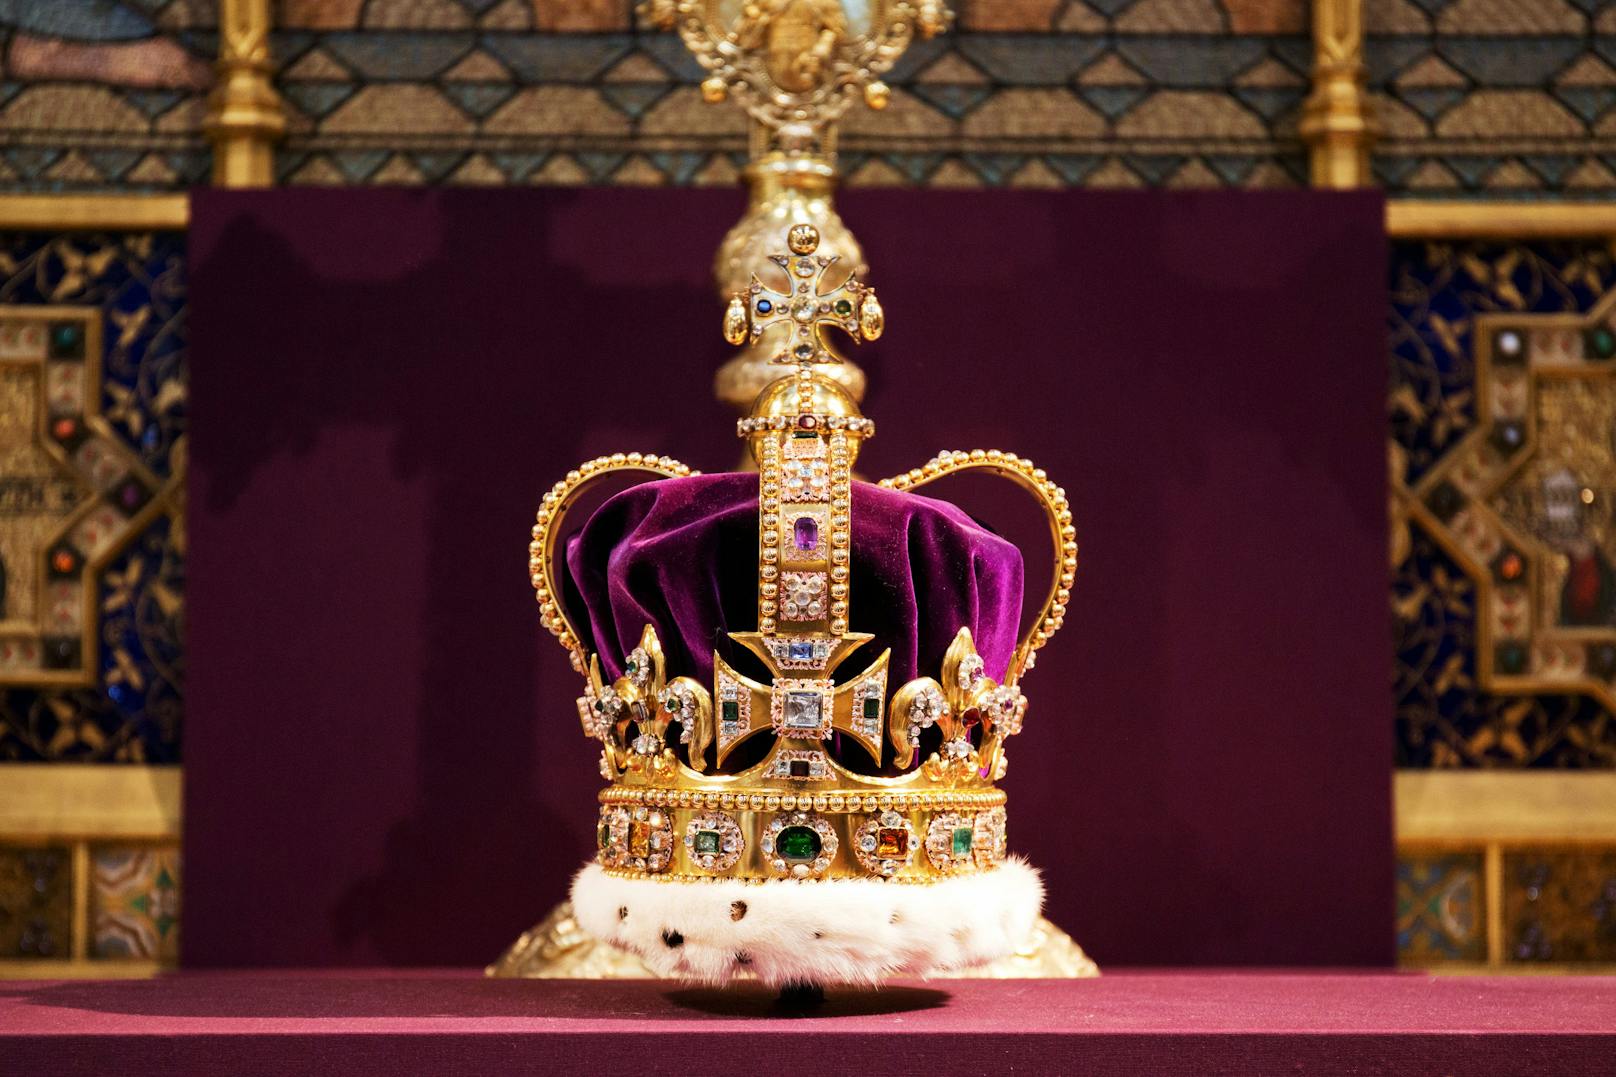 Die St. Edward's Krone aus dem Jahr 1661. Sie besteht aus Gold und ist mit 444 farbigen Edelsteinen besetzt, darunter Rubine, Saphire, Granate und Turmaline. Der Mittelteil besteht aus Samt und Pelz.